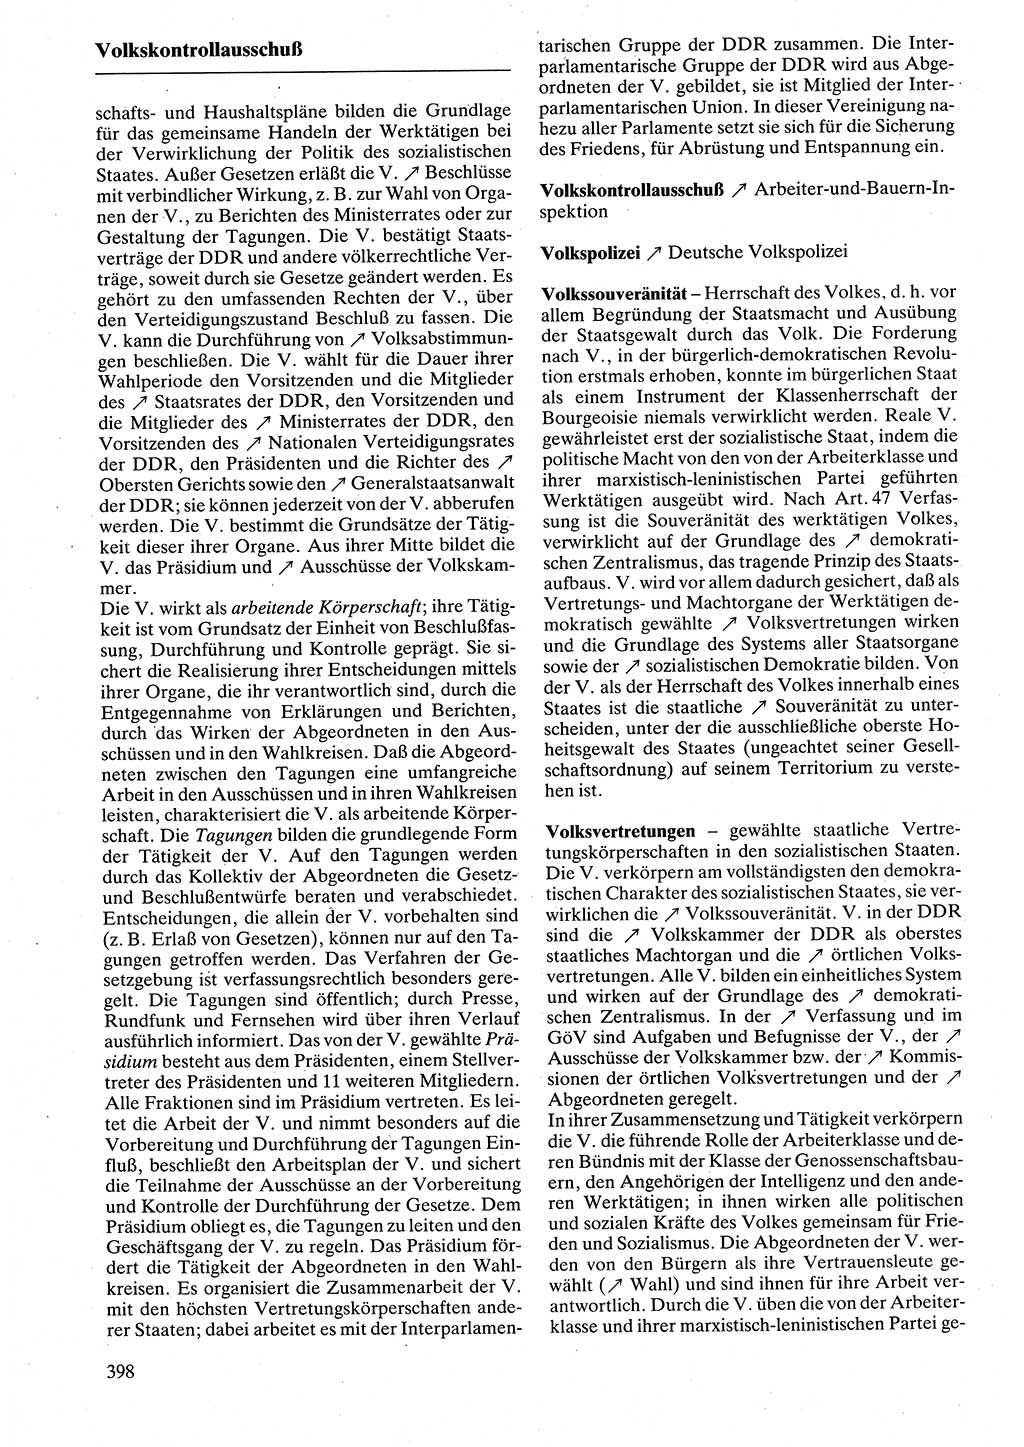 Rechtslexikon [Deutsche Demokratische Republik (DDR)] 1988, Seite 398 (Rechtslex. DDR 1988, S. 398)